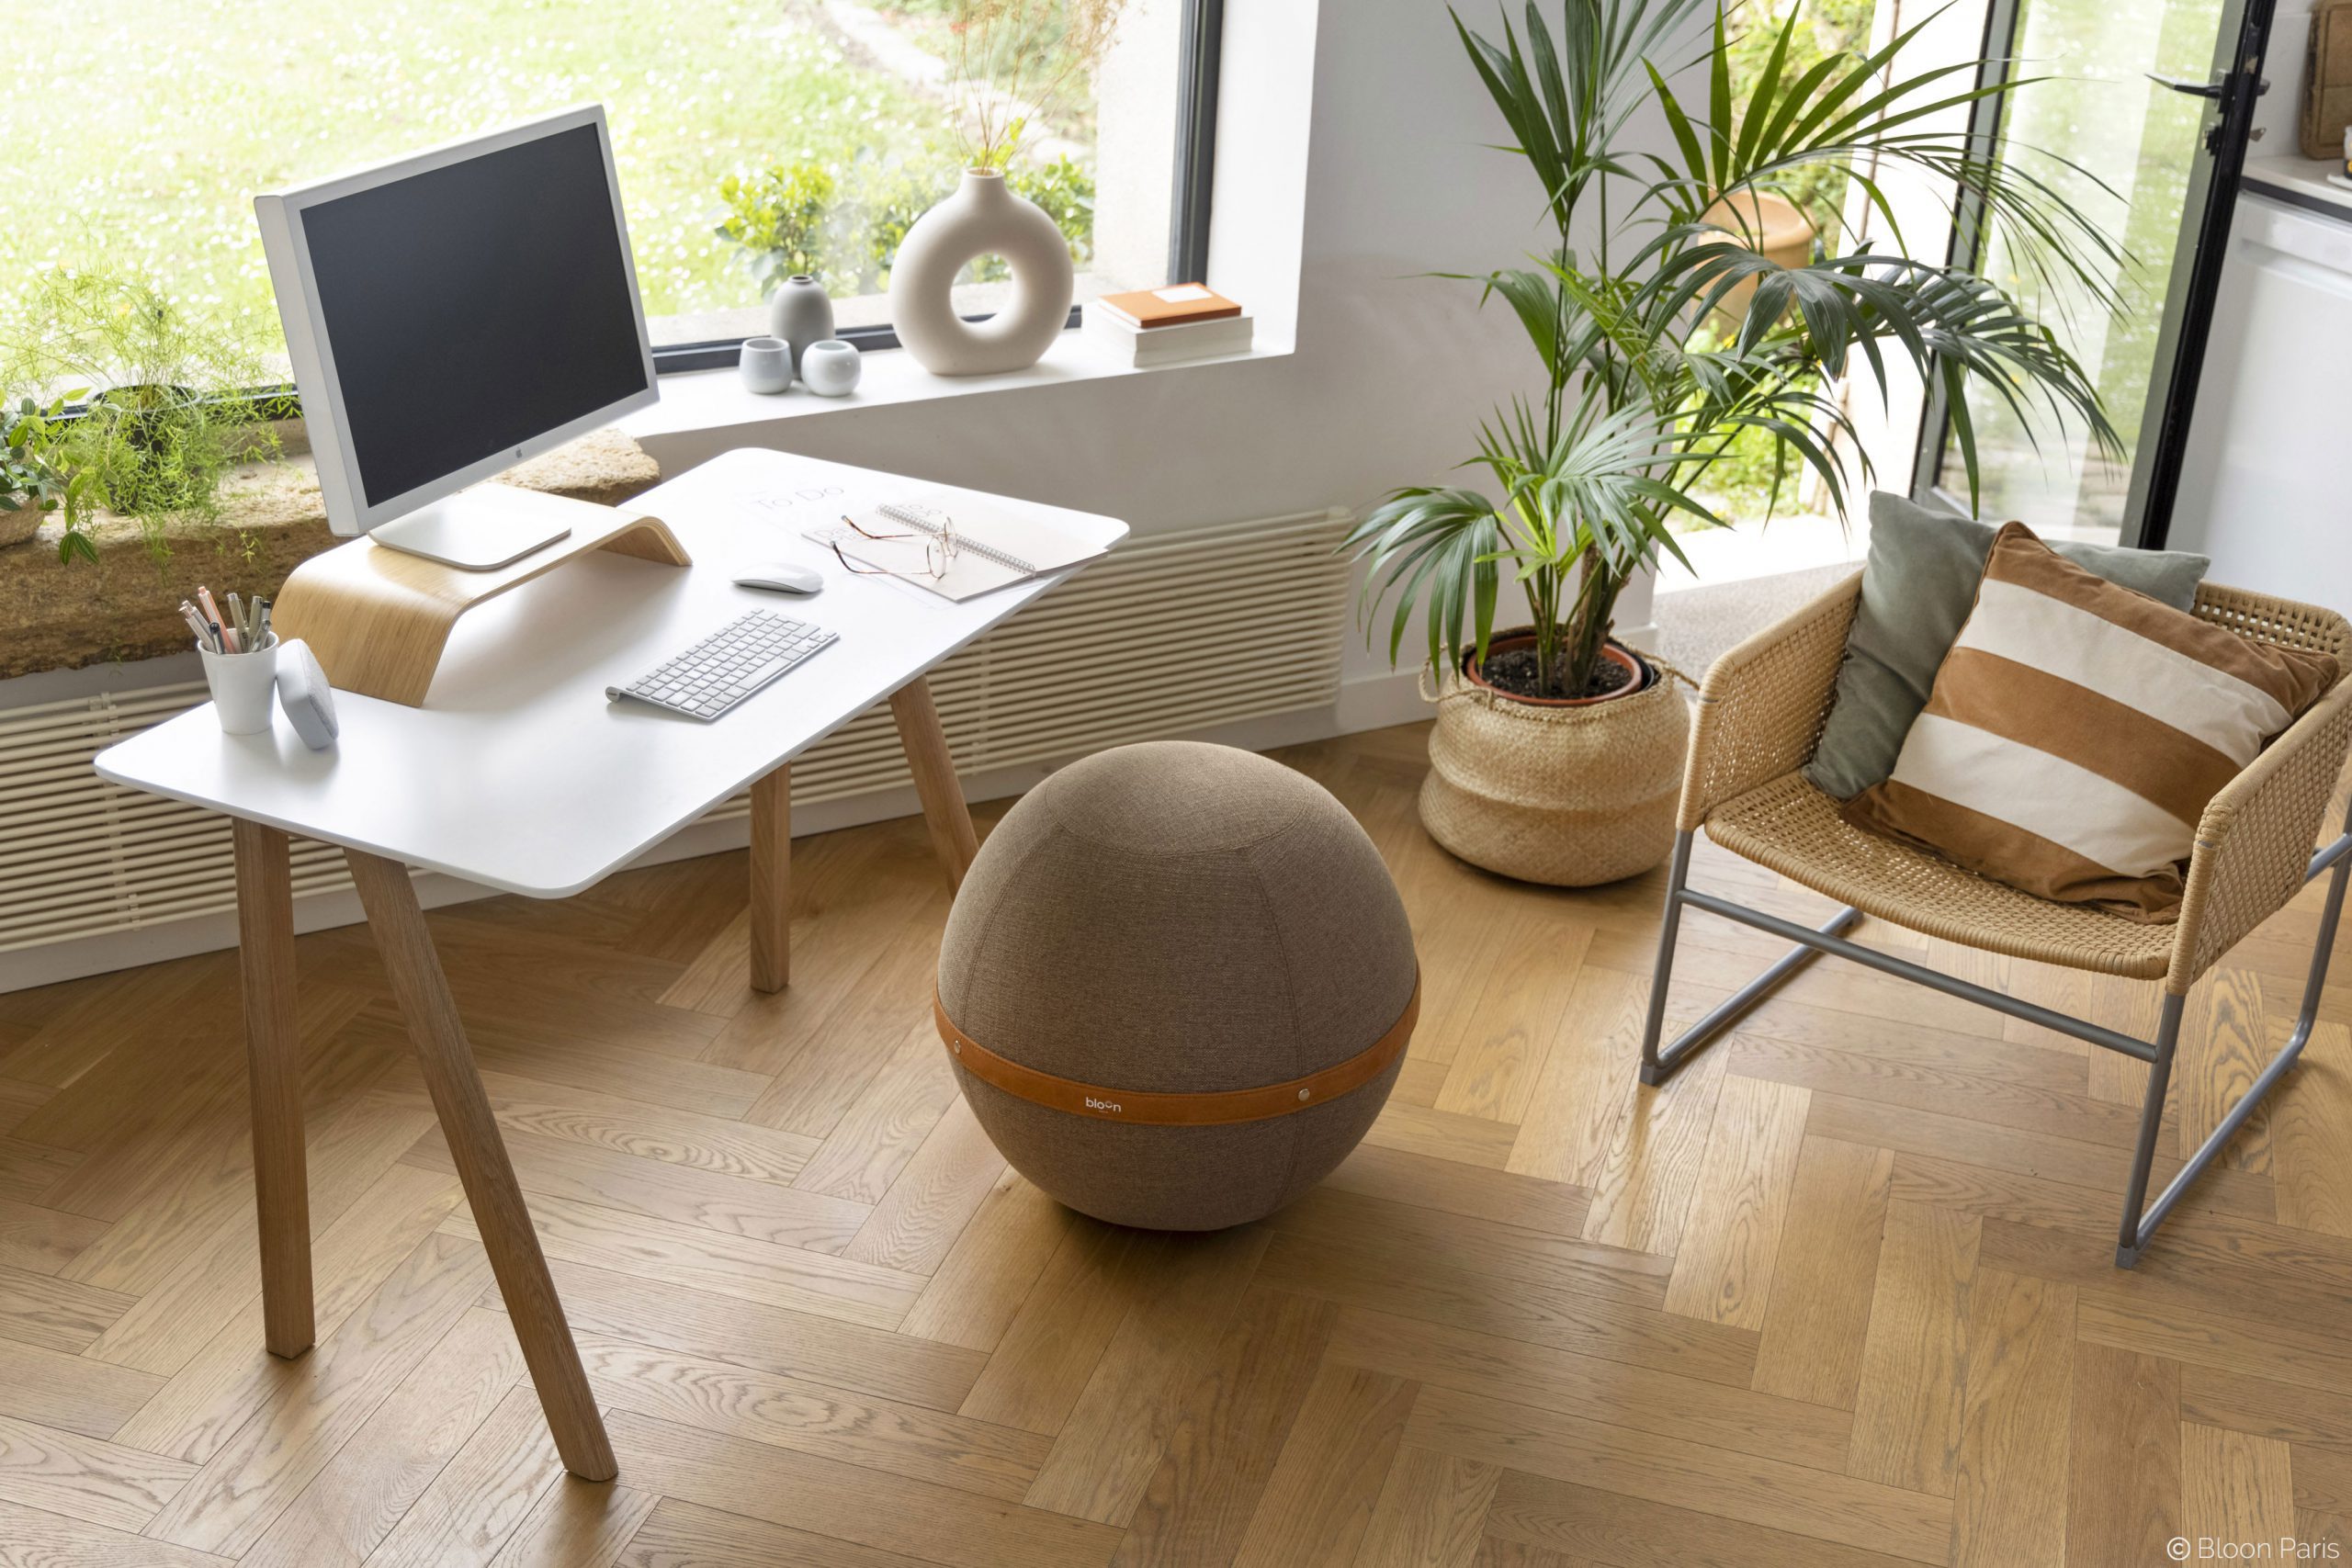 Siège ballon : le Swiss ball ergonomique au bureau ou la maison